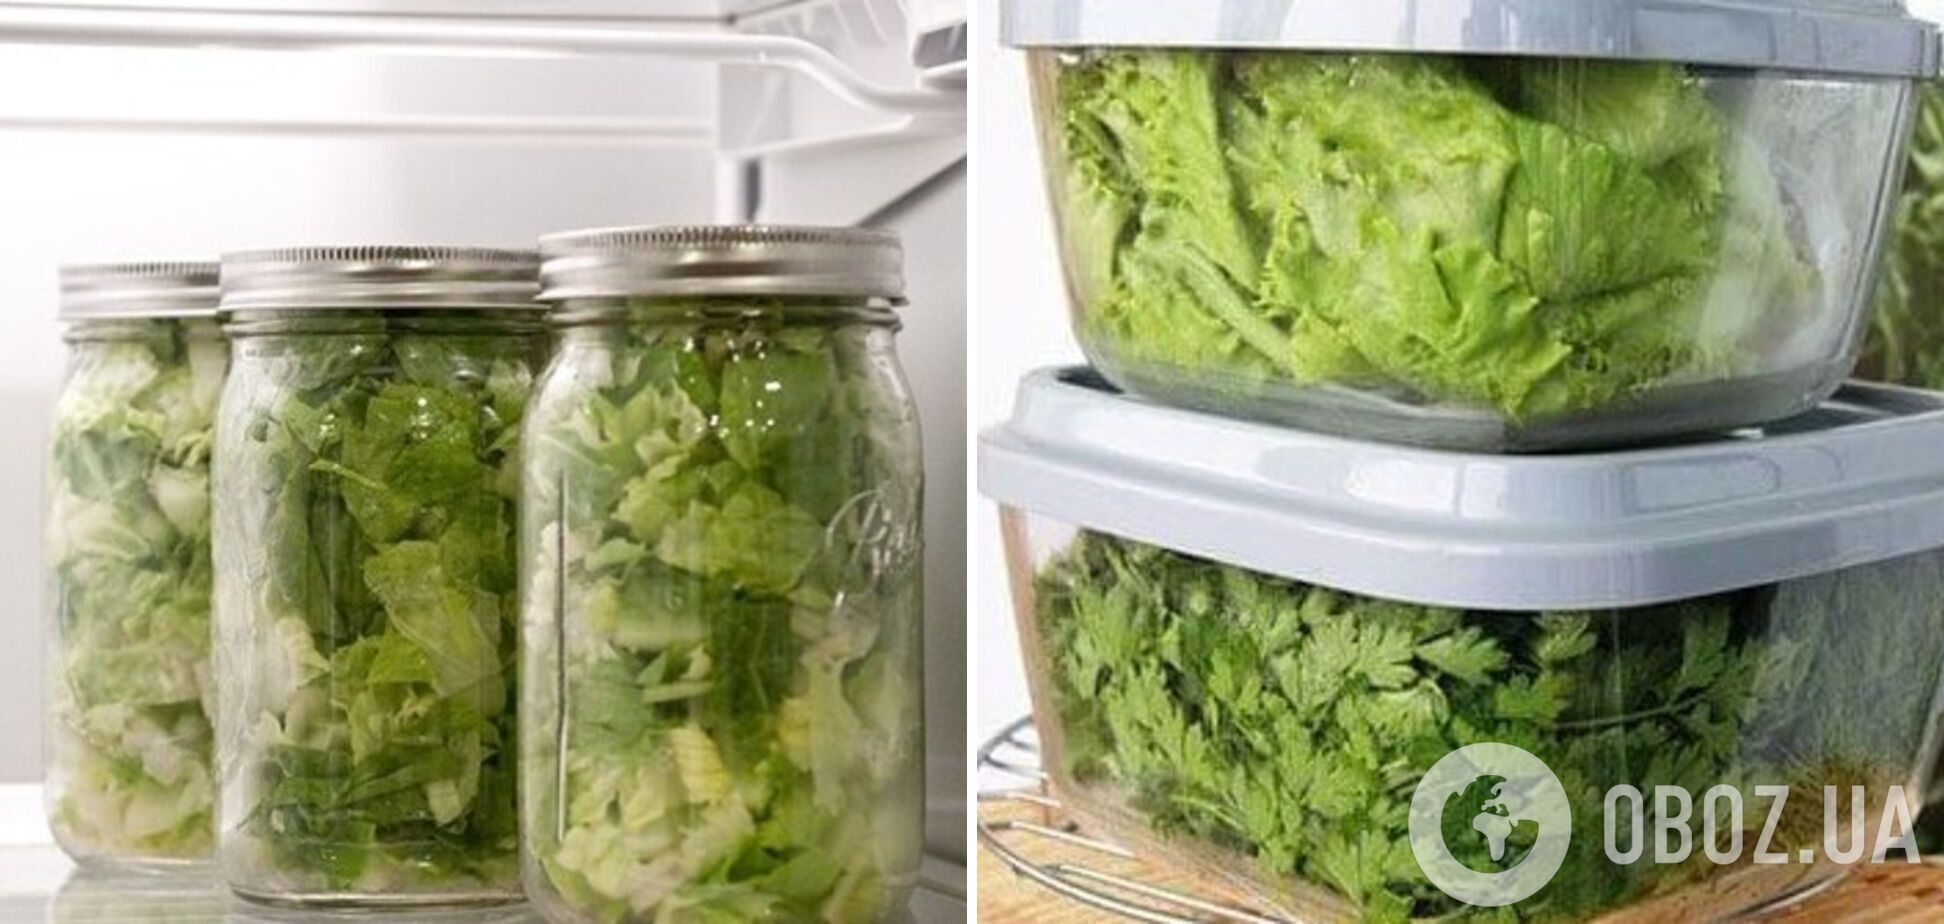 Хранение зелени в стеклянных и пластиковых тарах